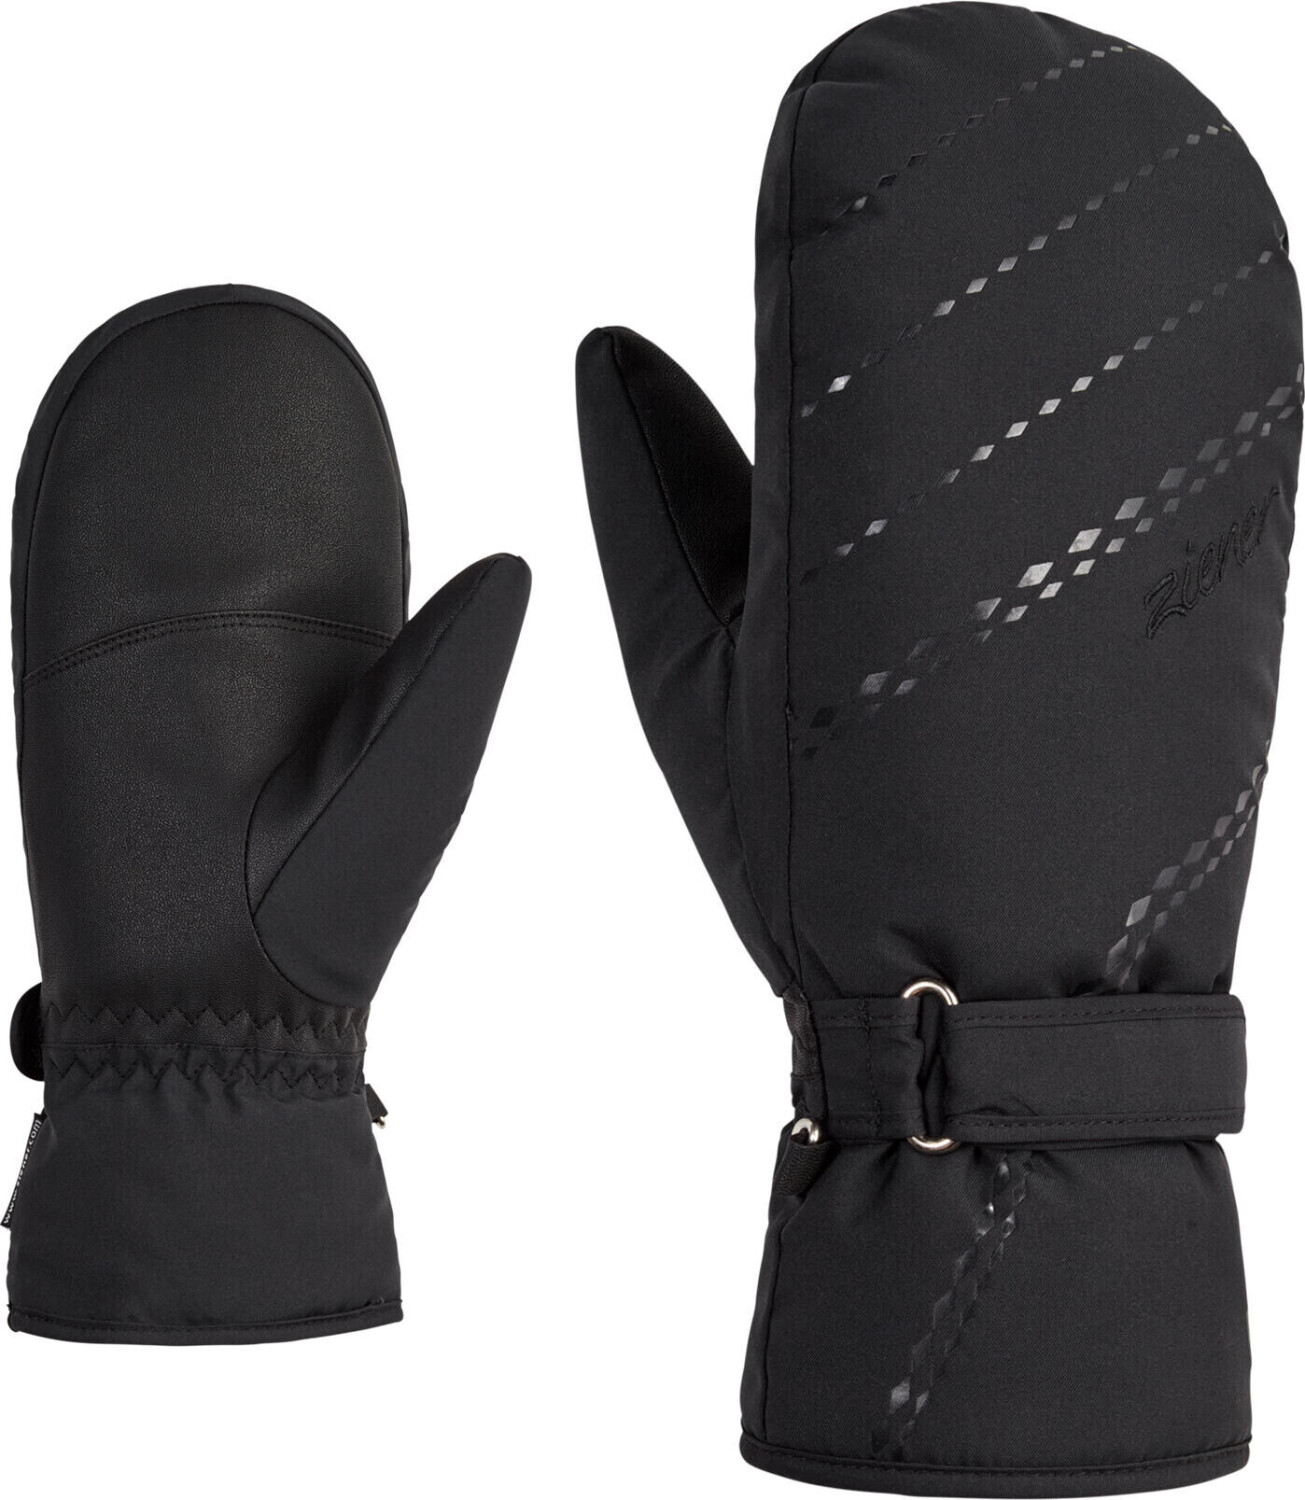 Ziener Korvana Mitten Lady Glove ab 25,09 € | Preisvergleich bei